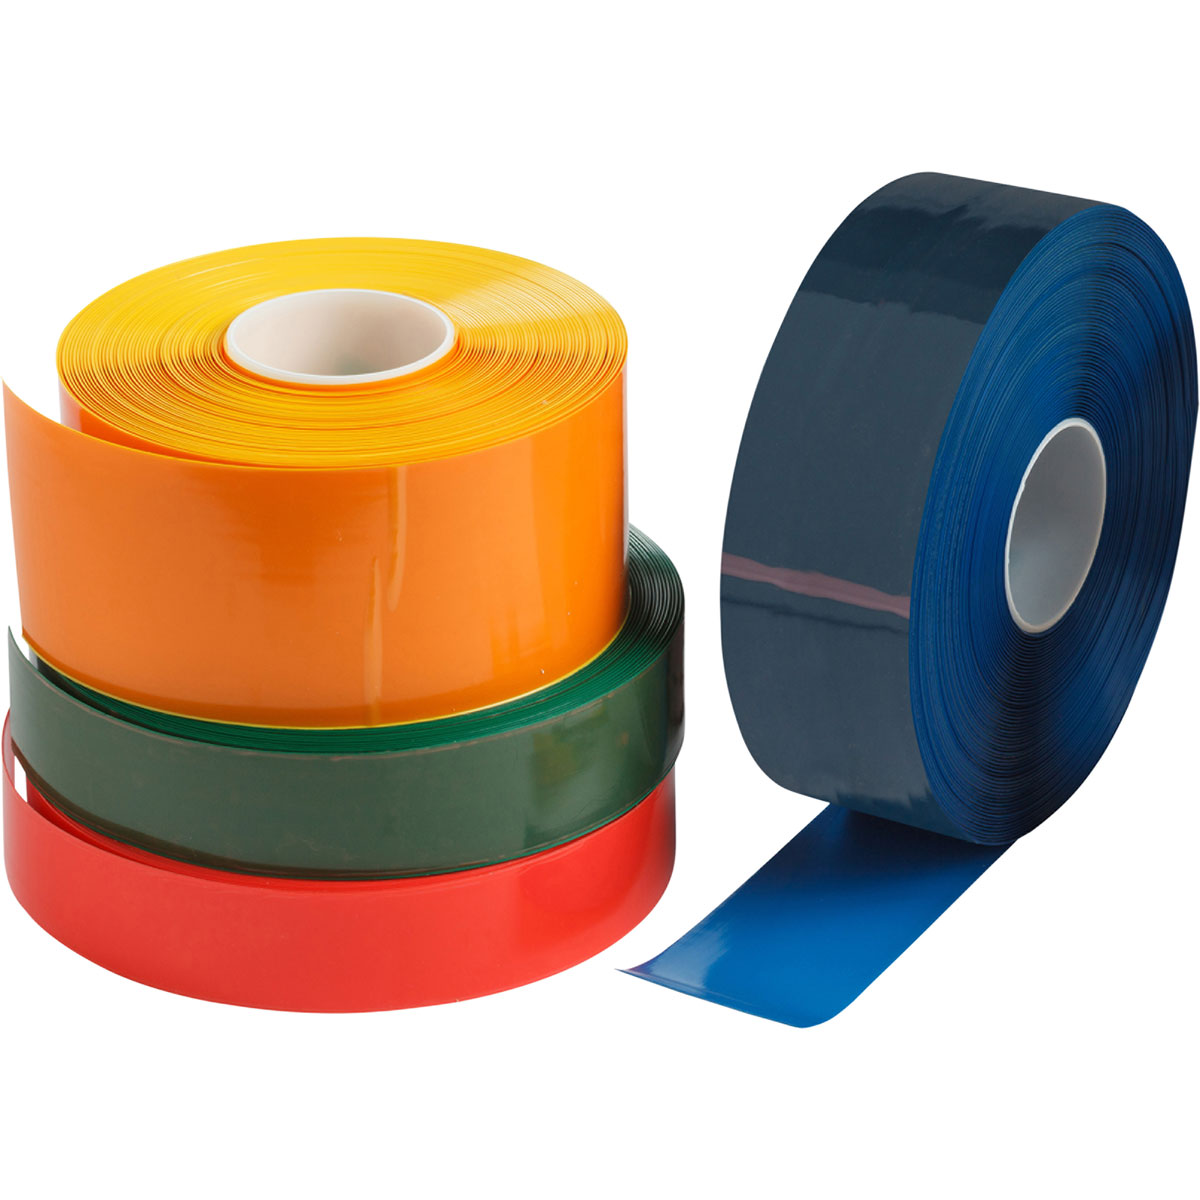 ToughStripe Max Solid Colored Tape